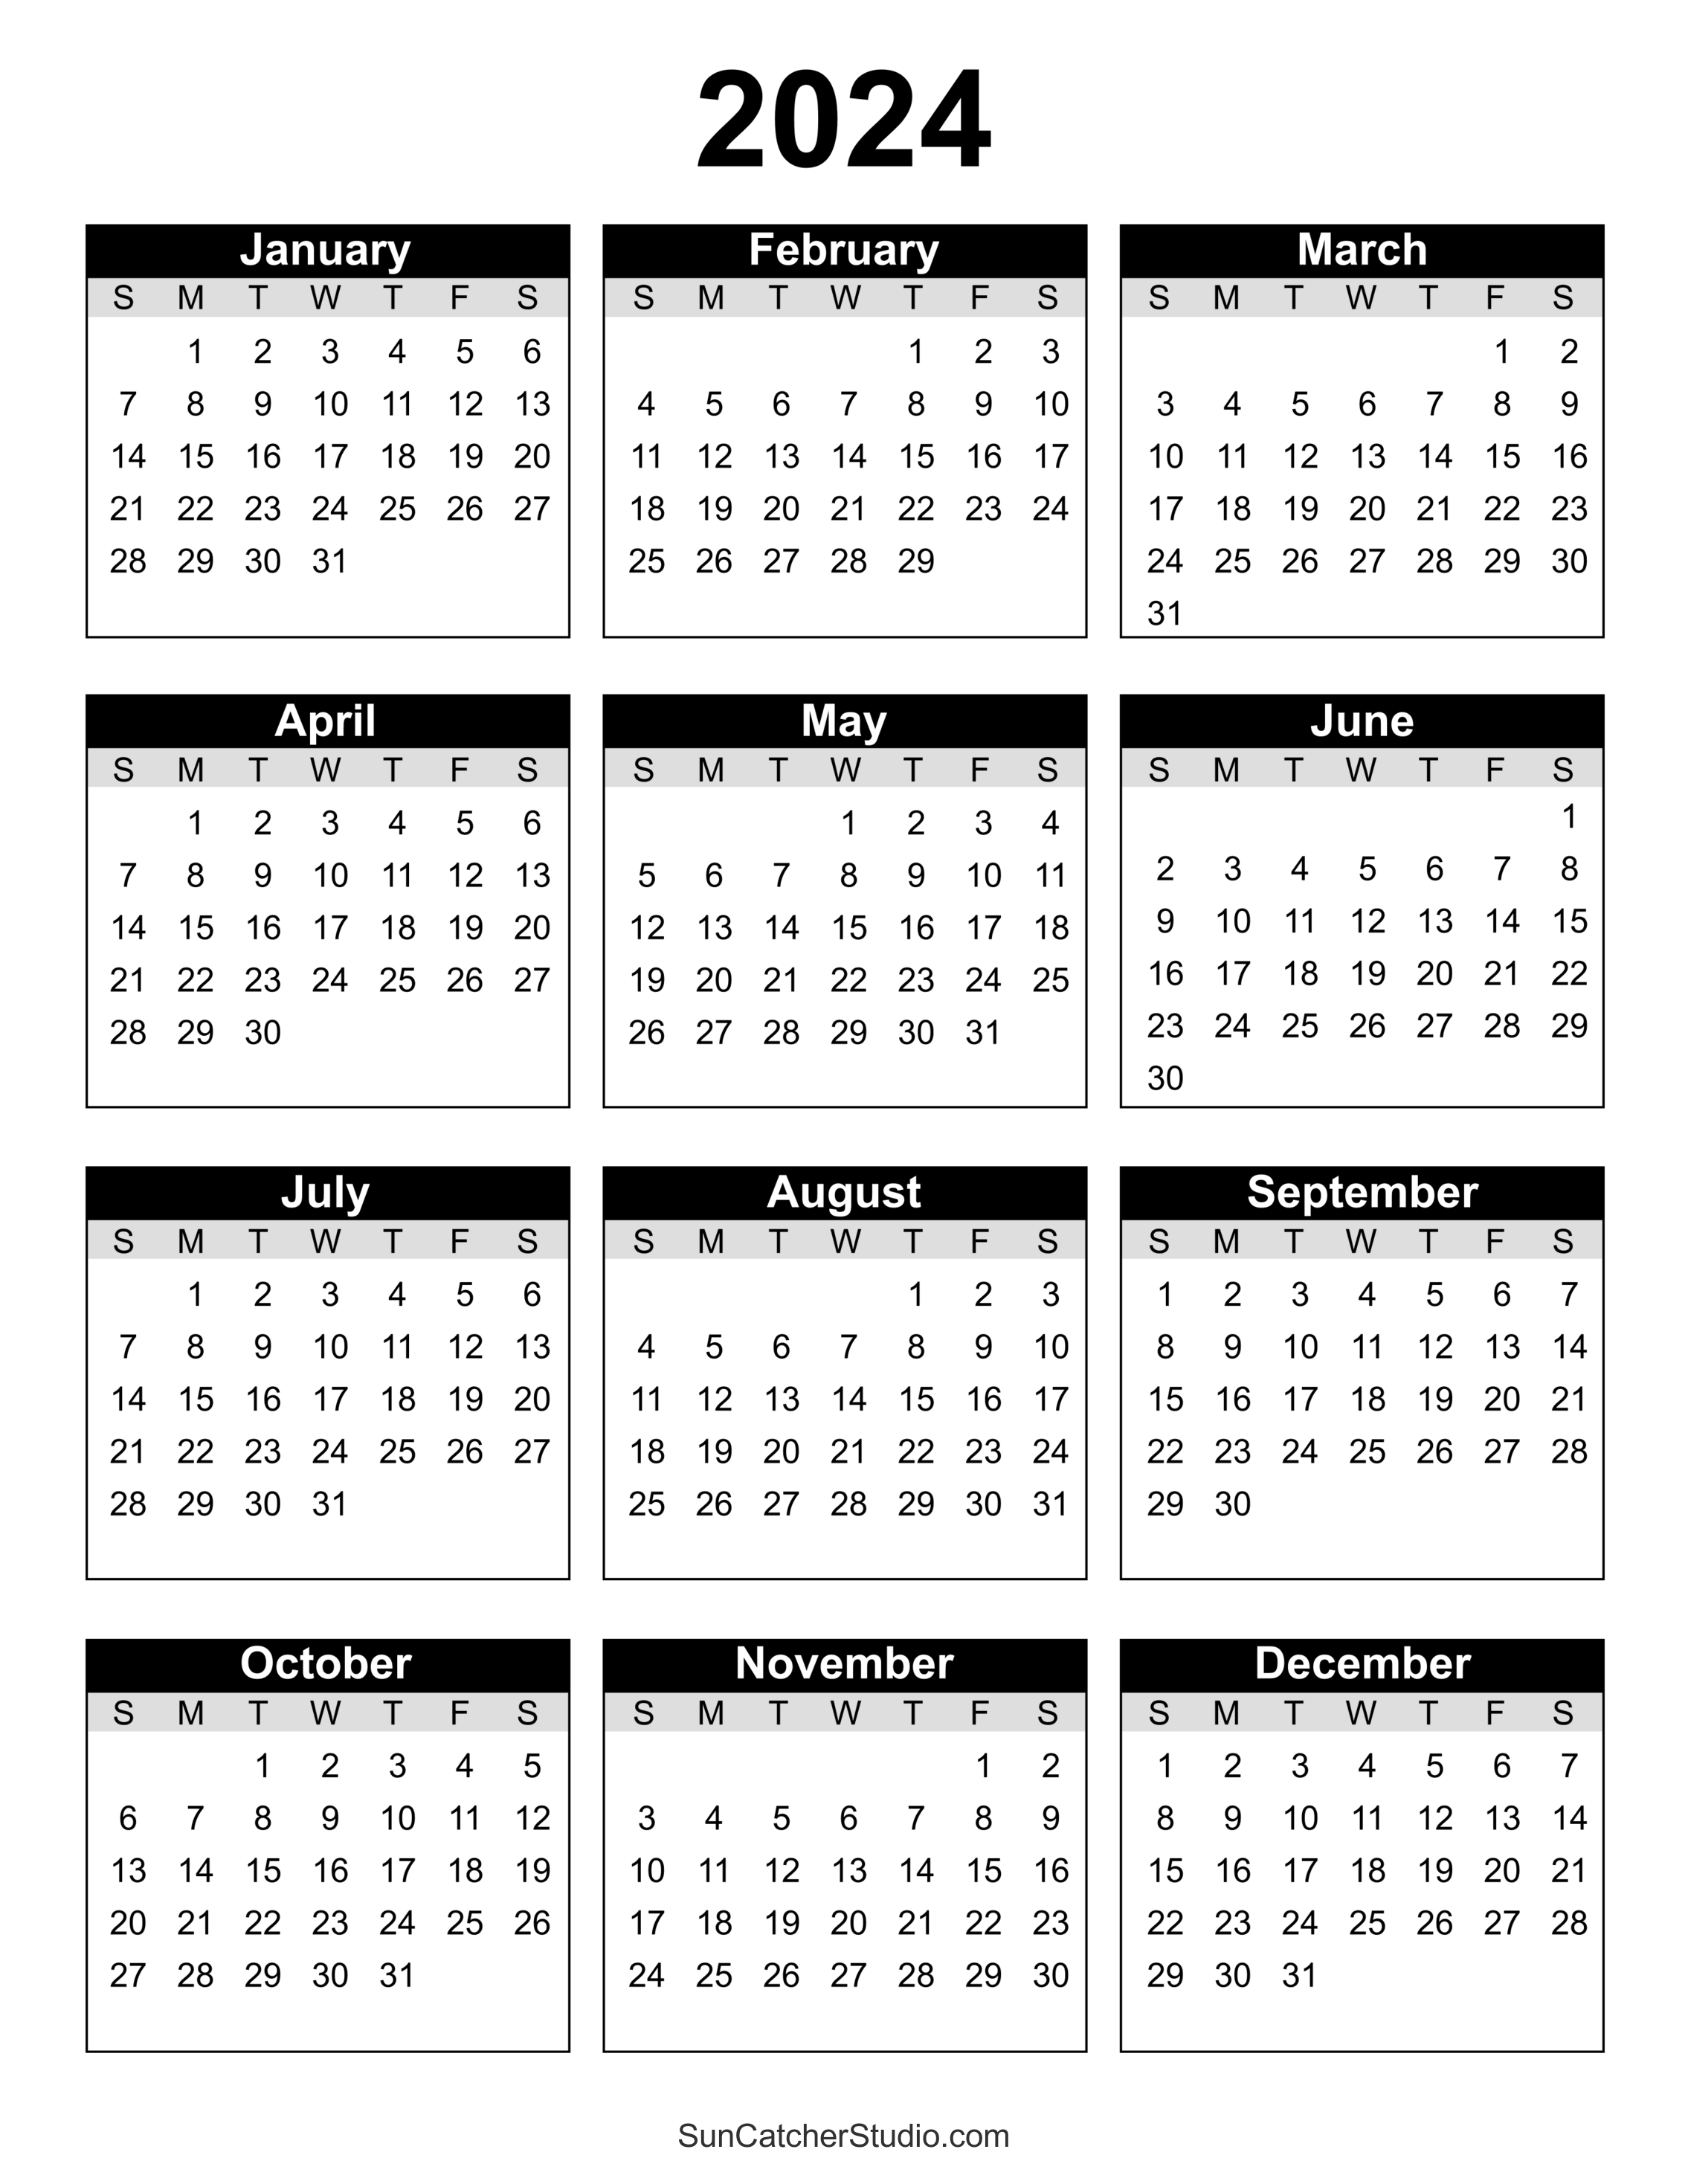 Printable Calendar 2024 Dddddd 010101 